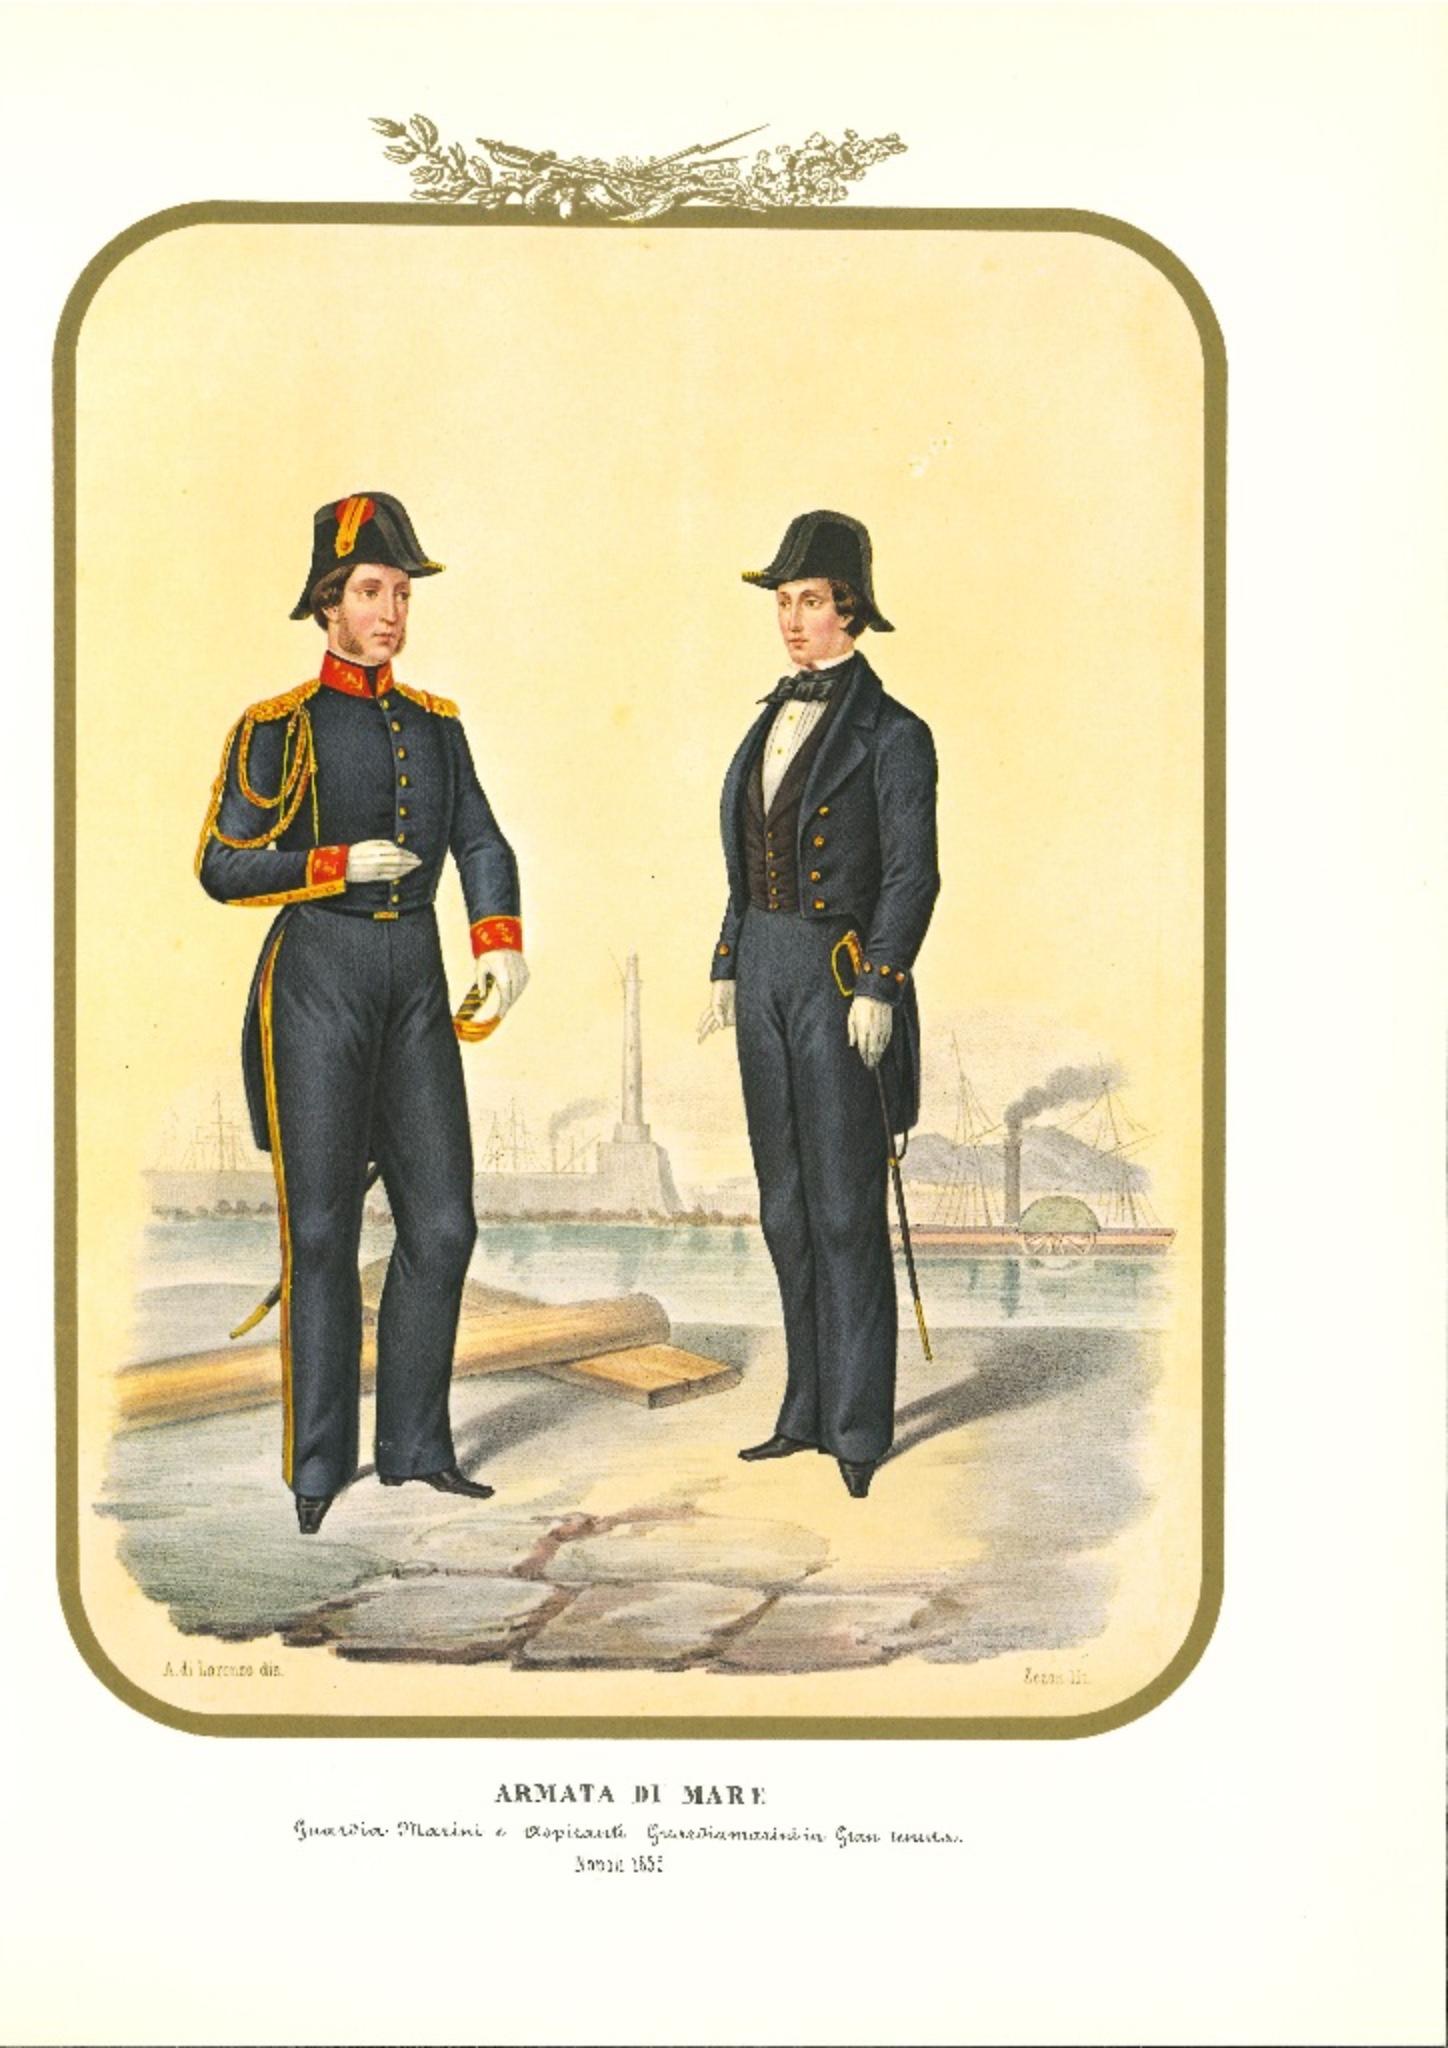 Royal Navy : Ensign est une lithographie originale d'Antonio Zezon. Naples 1855.

Intéressante lithographie en couleur décrivant la marine : on y voit un garde marin et un aspirant garde marin en tenue d'apparat.

En excellent état, l'estampe